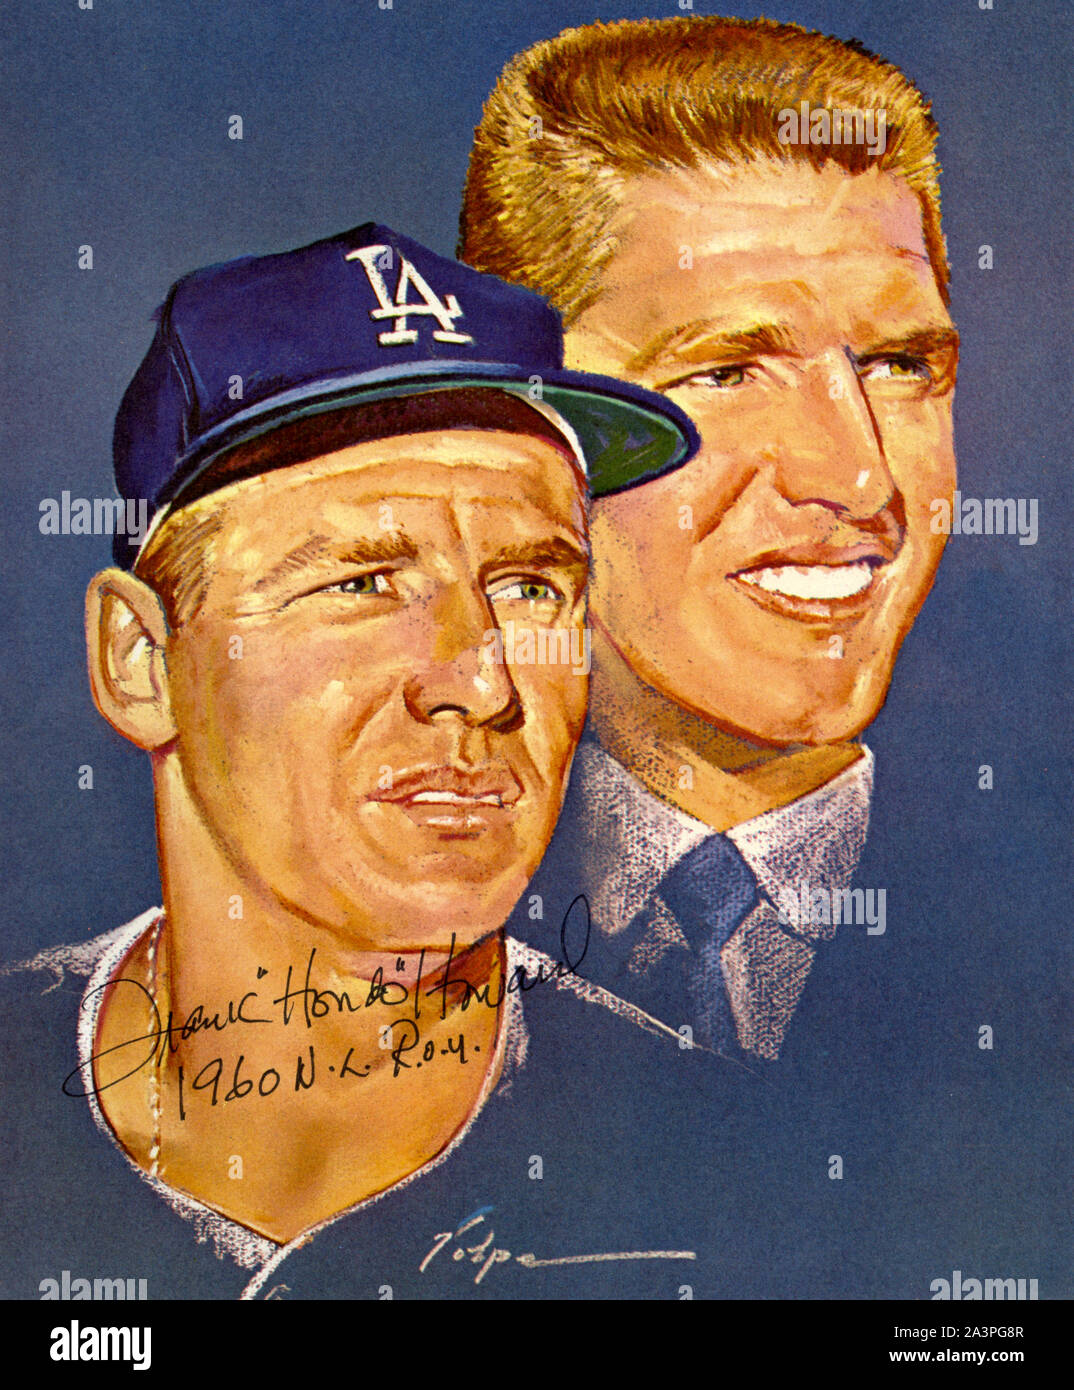 Künstlerische Portrait von Nicholas Volpe von Frank Howard, die einen Stern-Player wurde für die Los Angeles Dodgers in den 1960er Jahren. Stockfoto